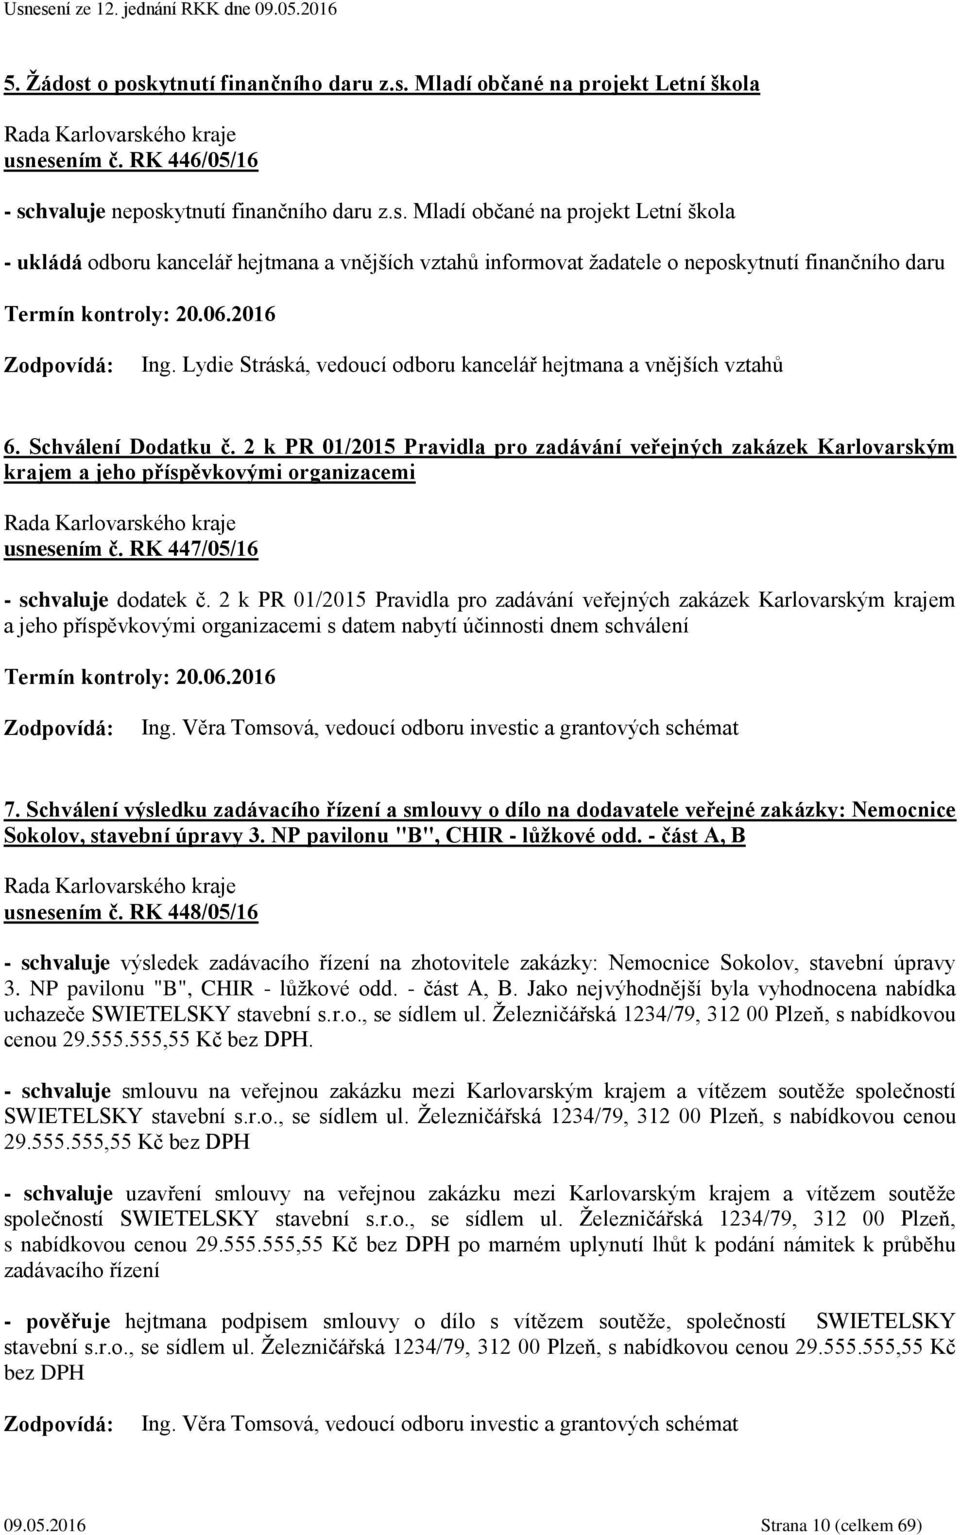 2 k PR 01/2015 Pravidla pro zadávání veřejných zakázek Karlovarským krajem a jeho příspěvkovými organizacemi usnesením č. RK 447/05/16 - schvaluje dodatek č.